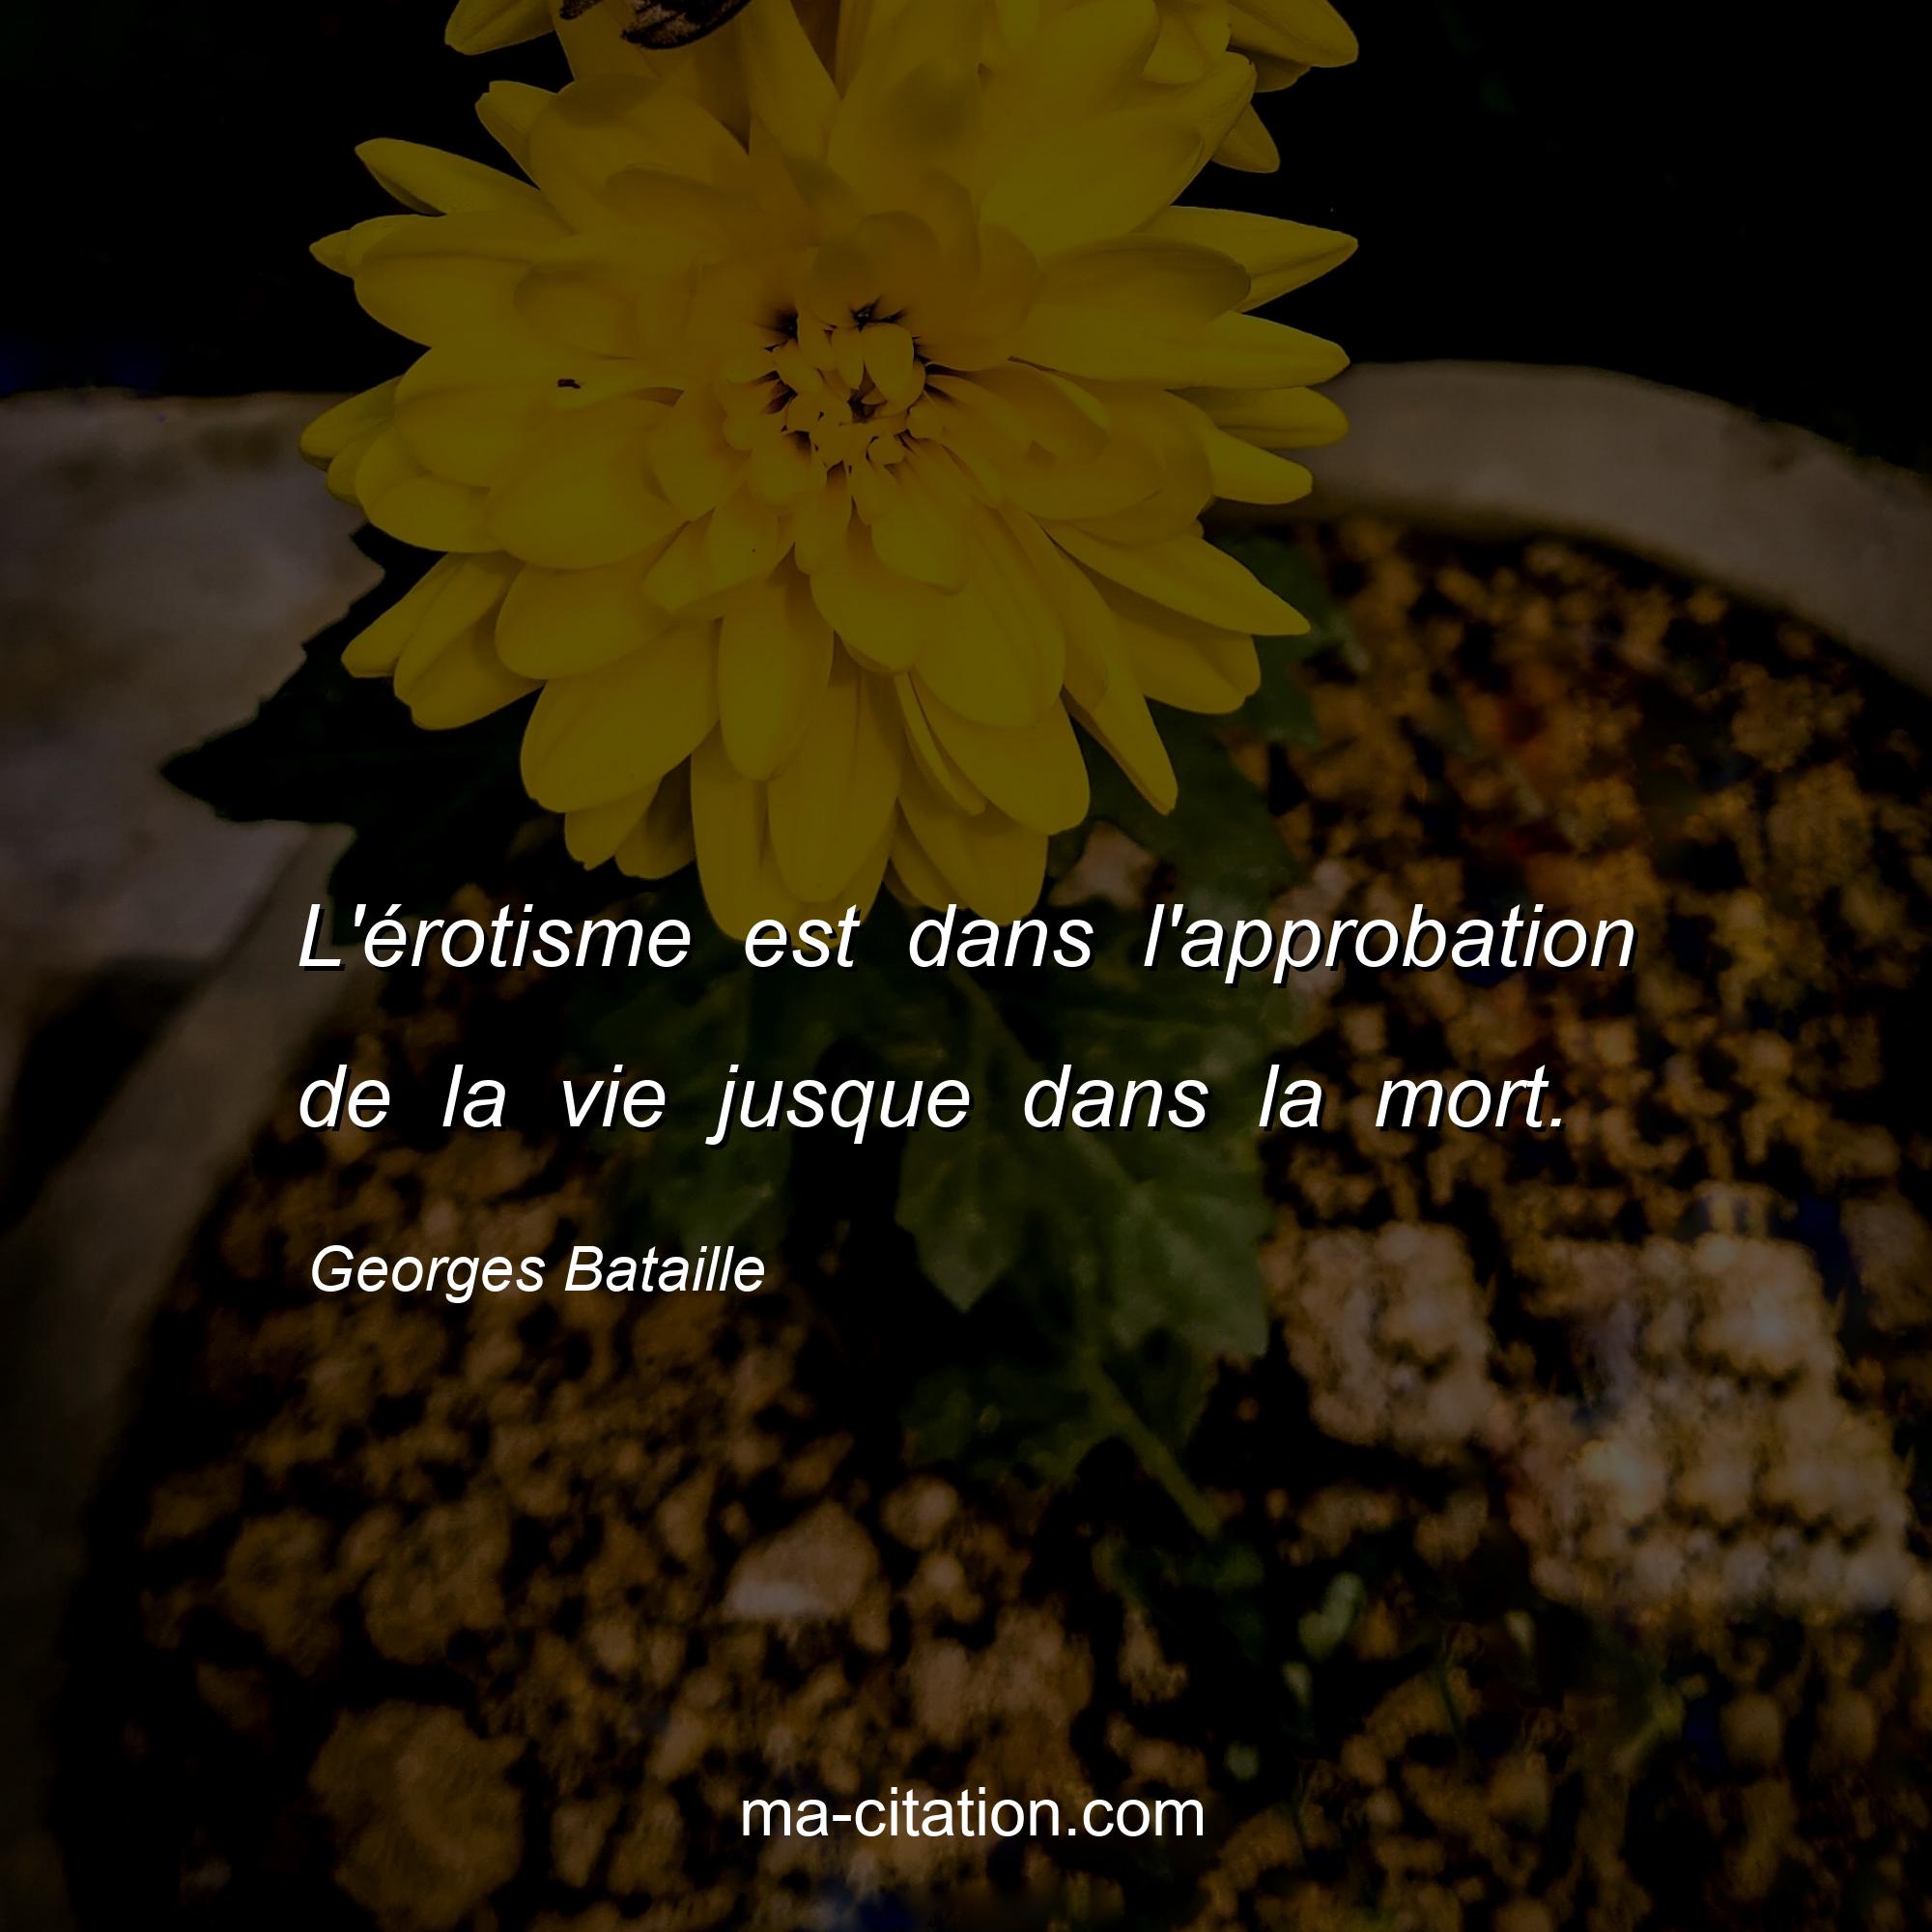 Georges Bataille : L'érotisme est dans l'approbation de la vie jusque dans la mort.